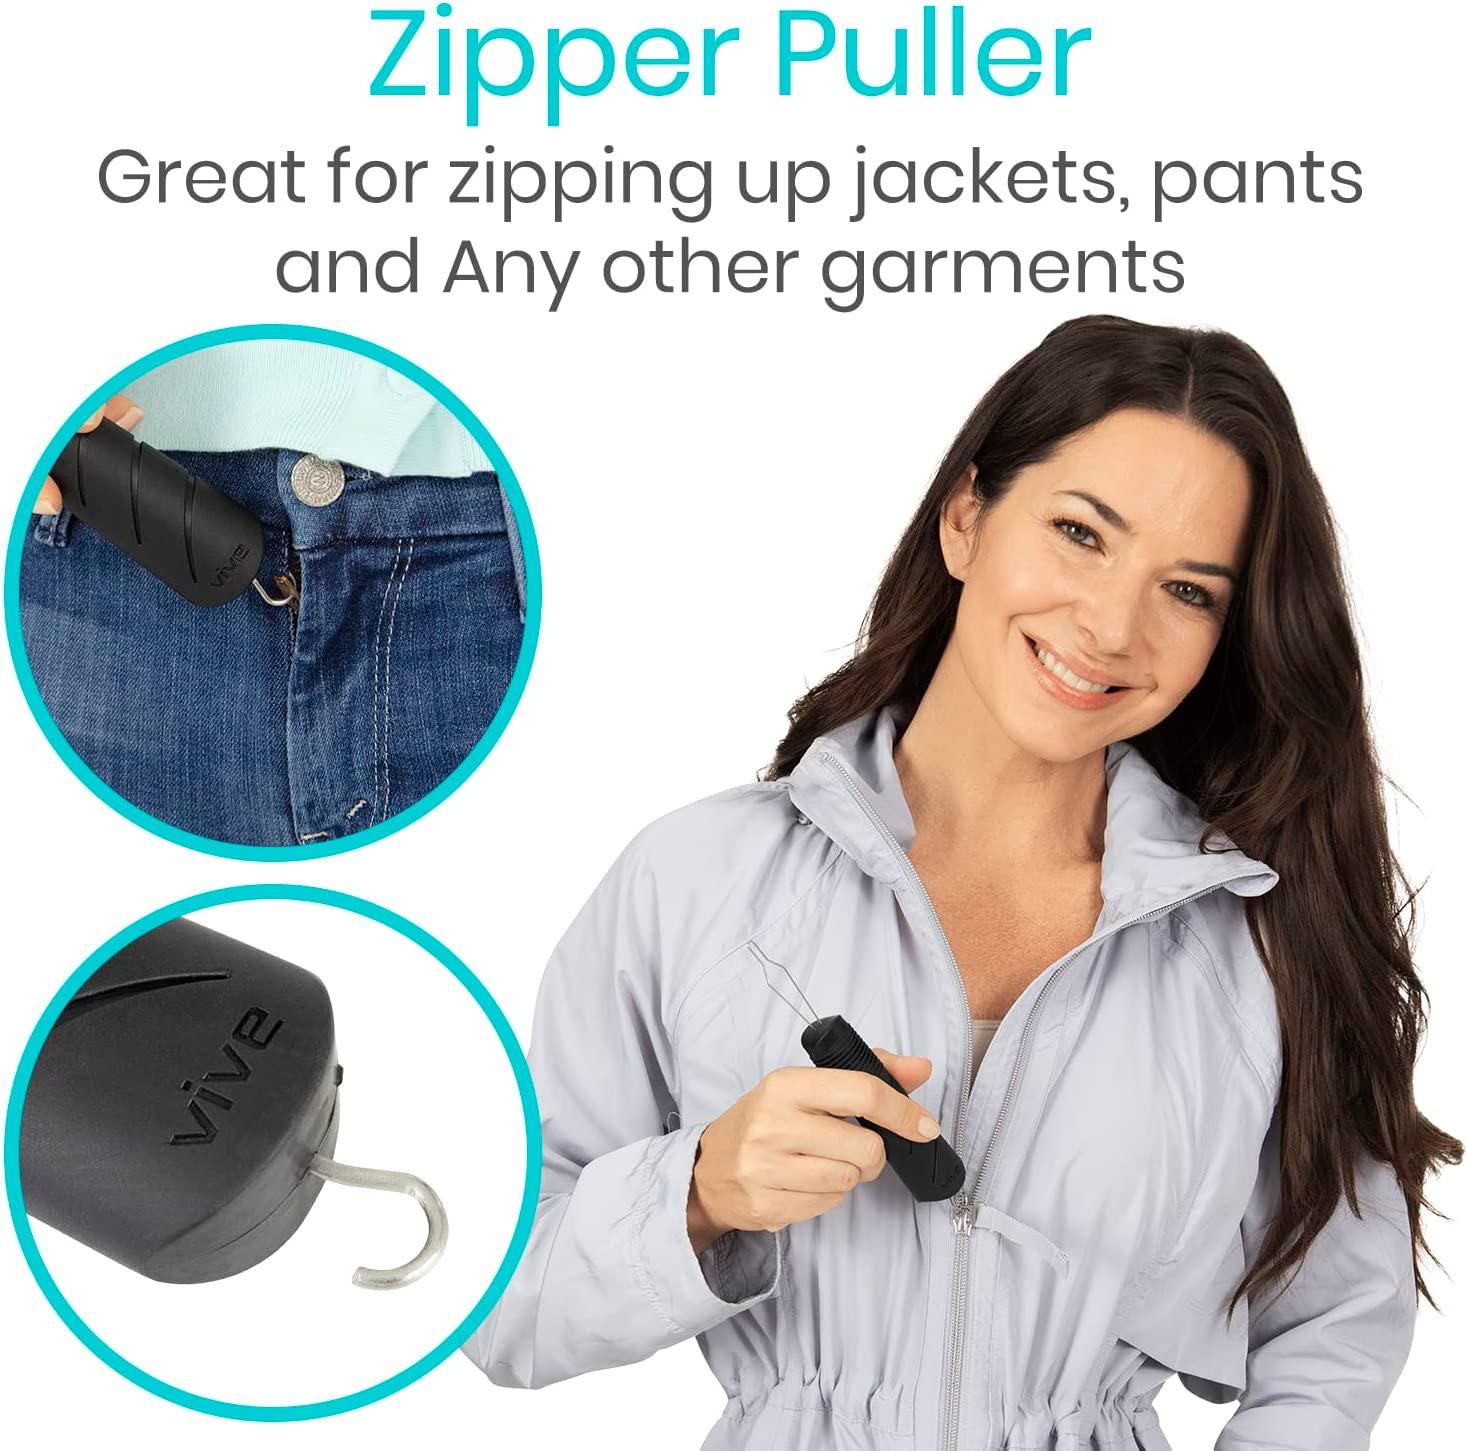 Button Aids, Zipper Pulls, Button and Zipper Helpers